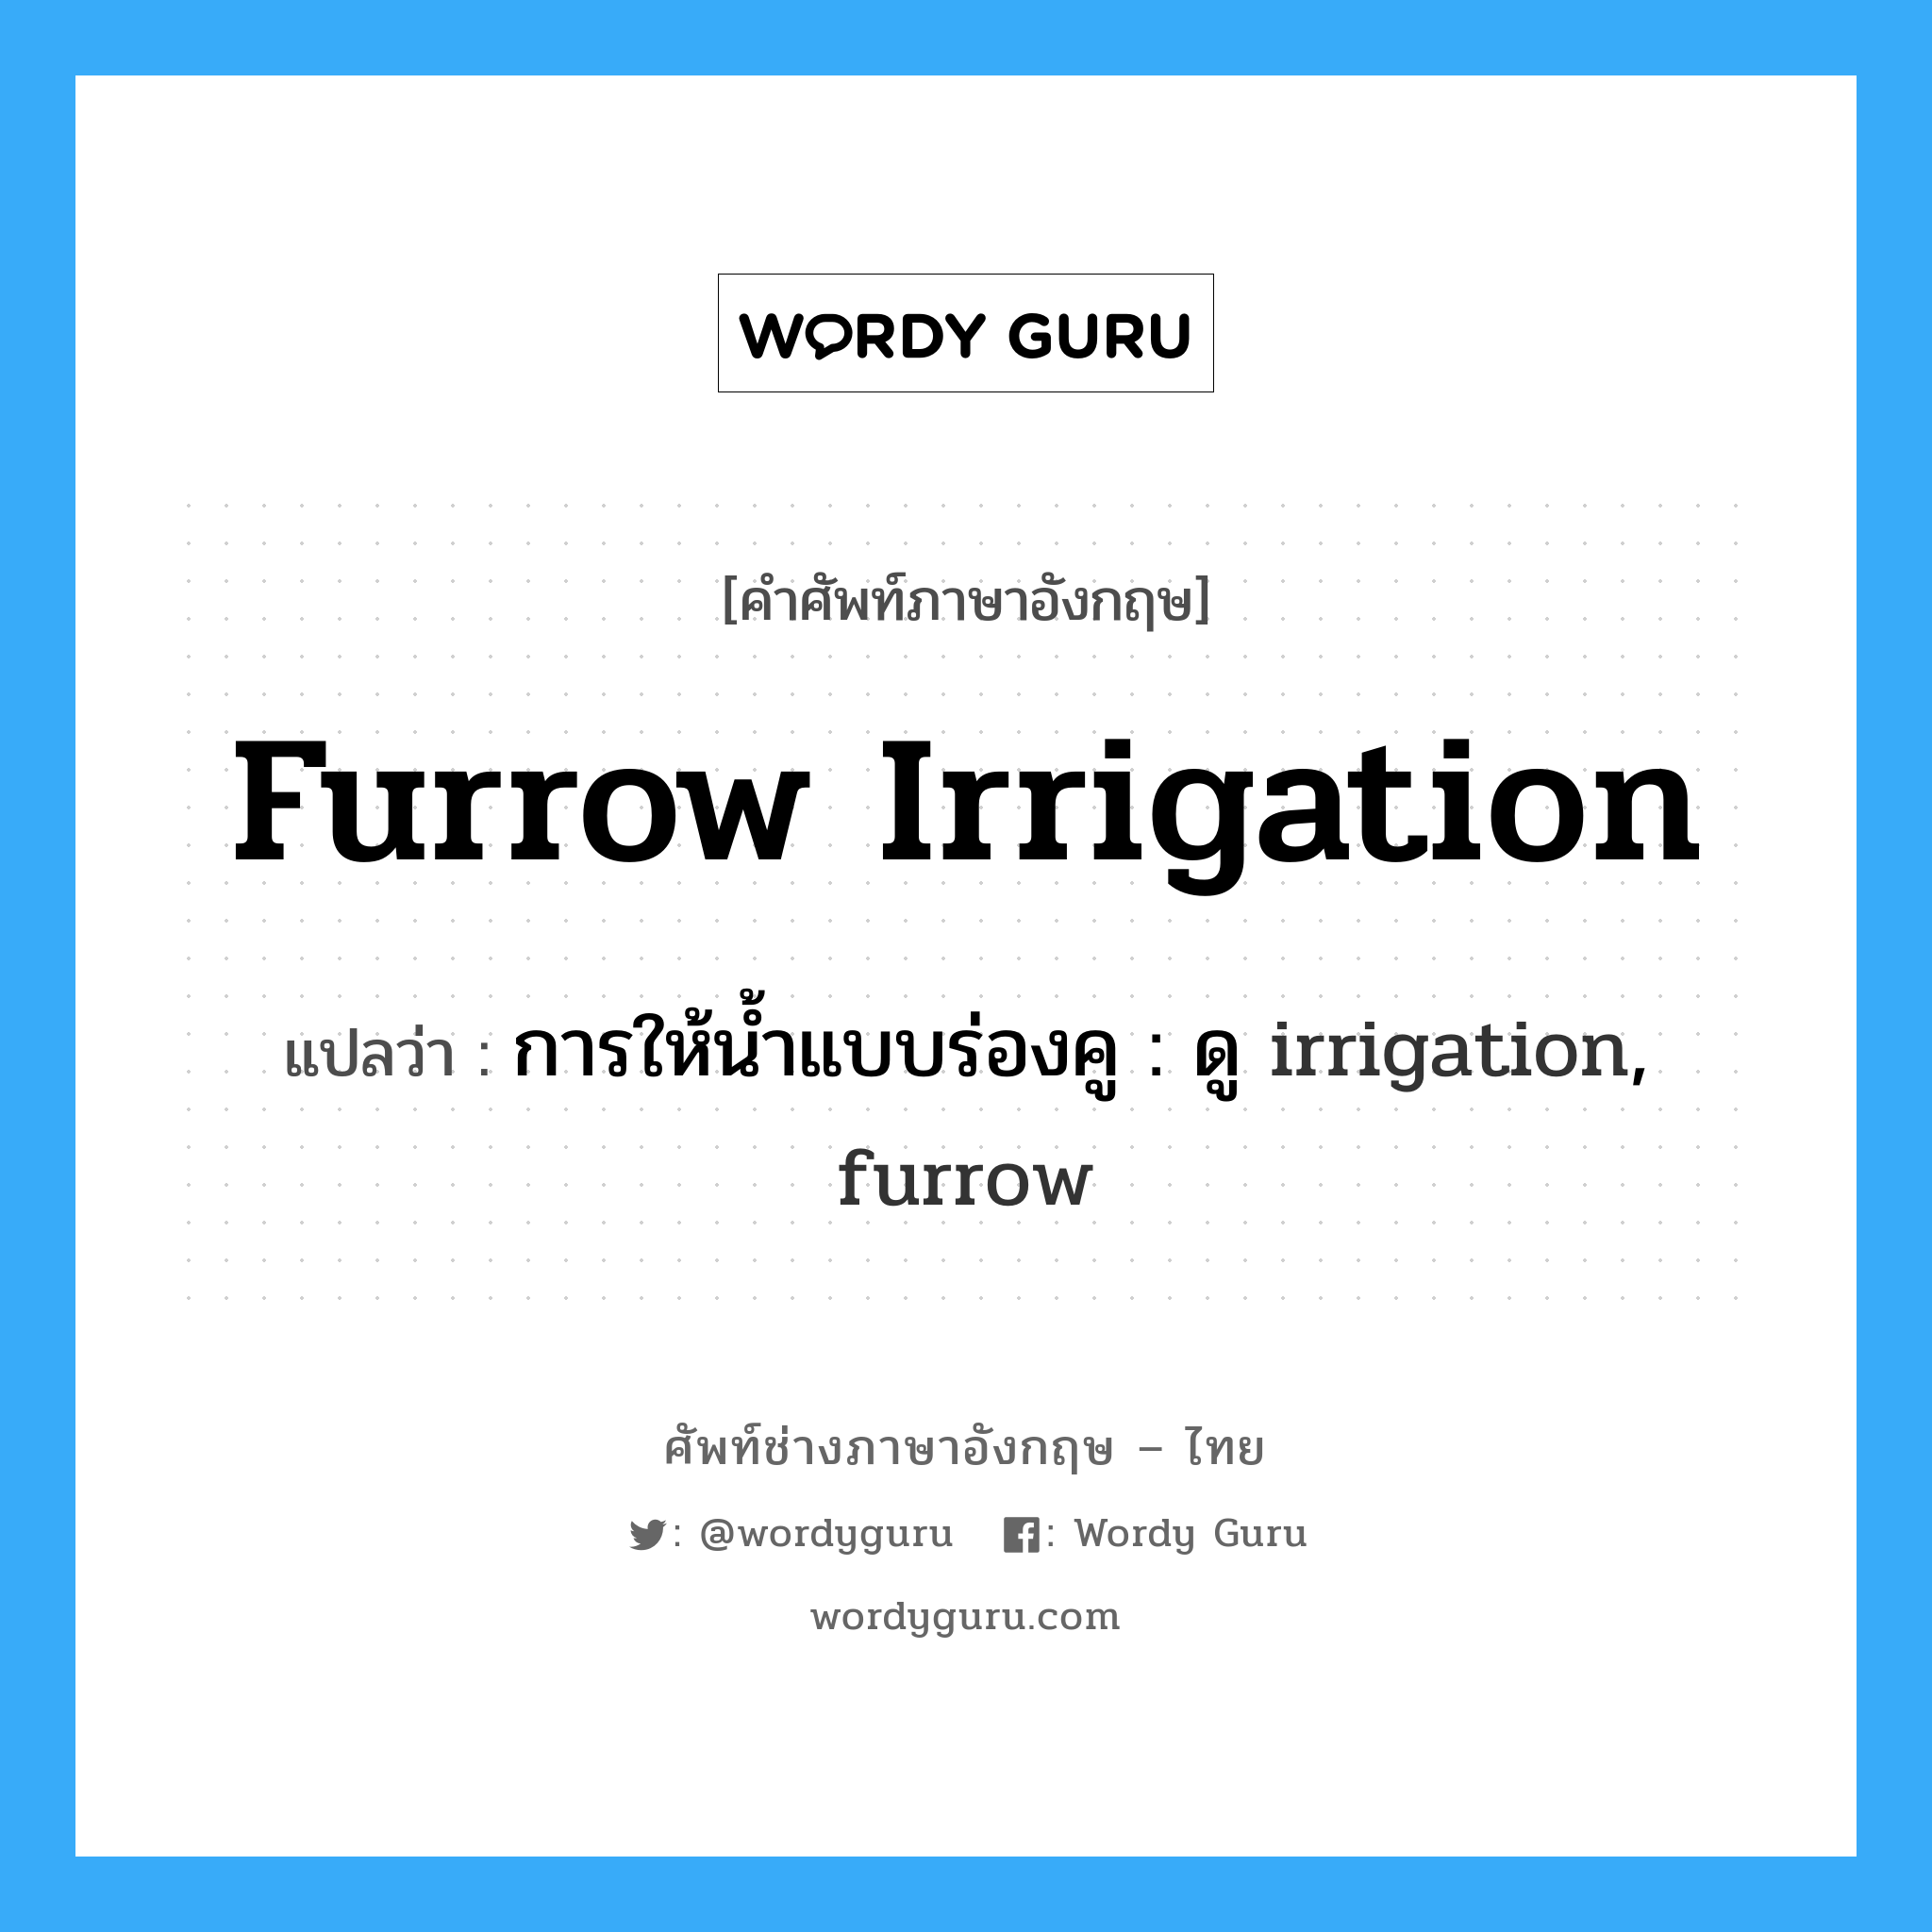 การให้น้ำแบบร่องคู : ดู irrigation, furrow ภาษาอังกฤษ?, คำศัพท์ช่างภาษาอังกฤษ - ไทย การให้น้ำแบบร่องคู : ดู irrigation, furrow คำศัพท์ภาษาอังกฤษ การให้น้ำแบบร่องคู : ดู irrigation, furrow แปลว่า furrow irrigation